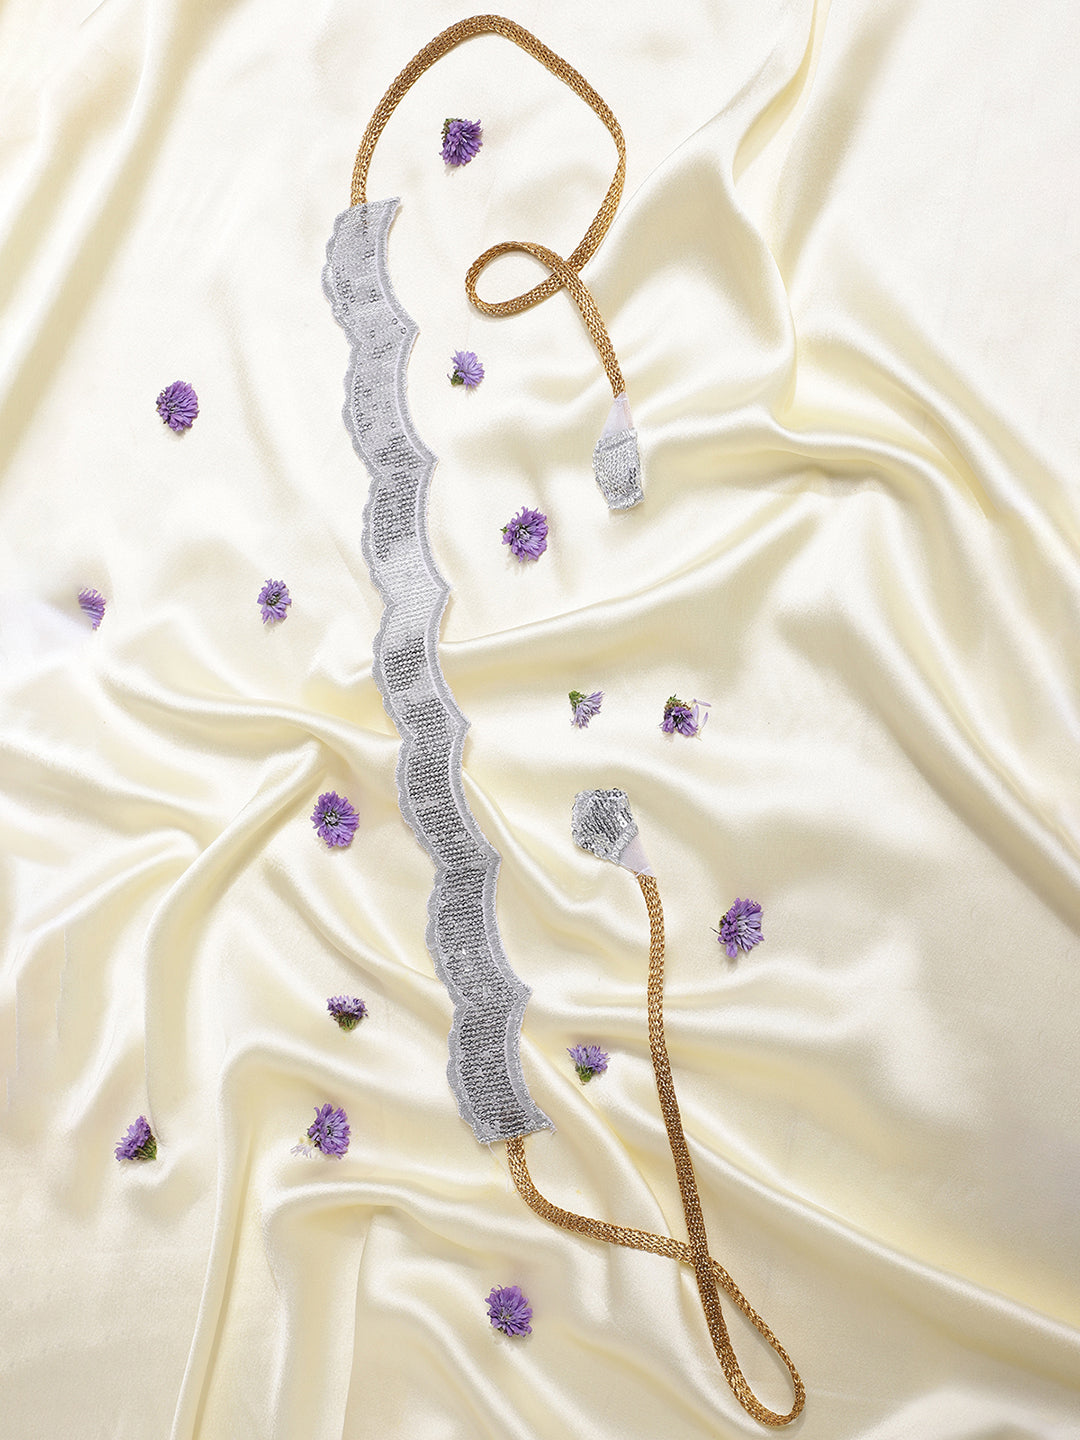 Athena Women White & Silver-Toned Sequence Embellished Waist Belt - Athena Lifestyle